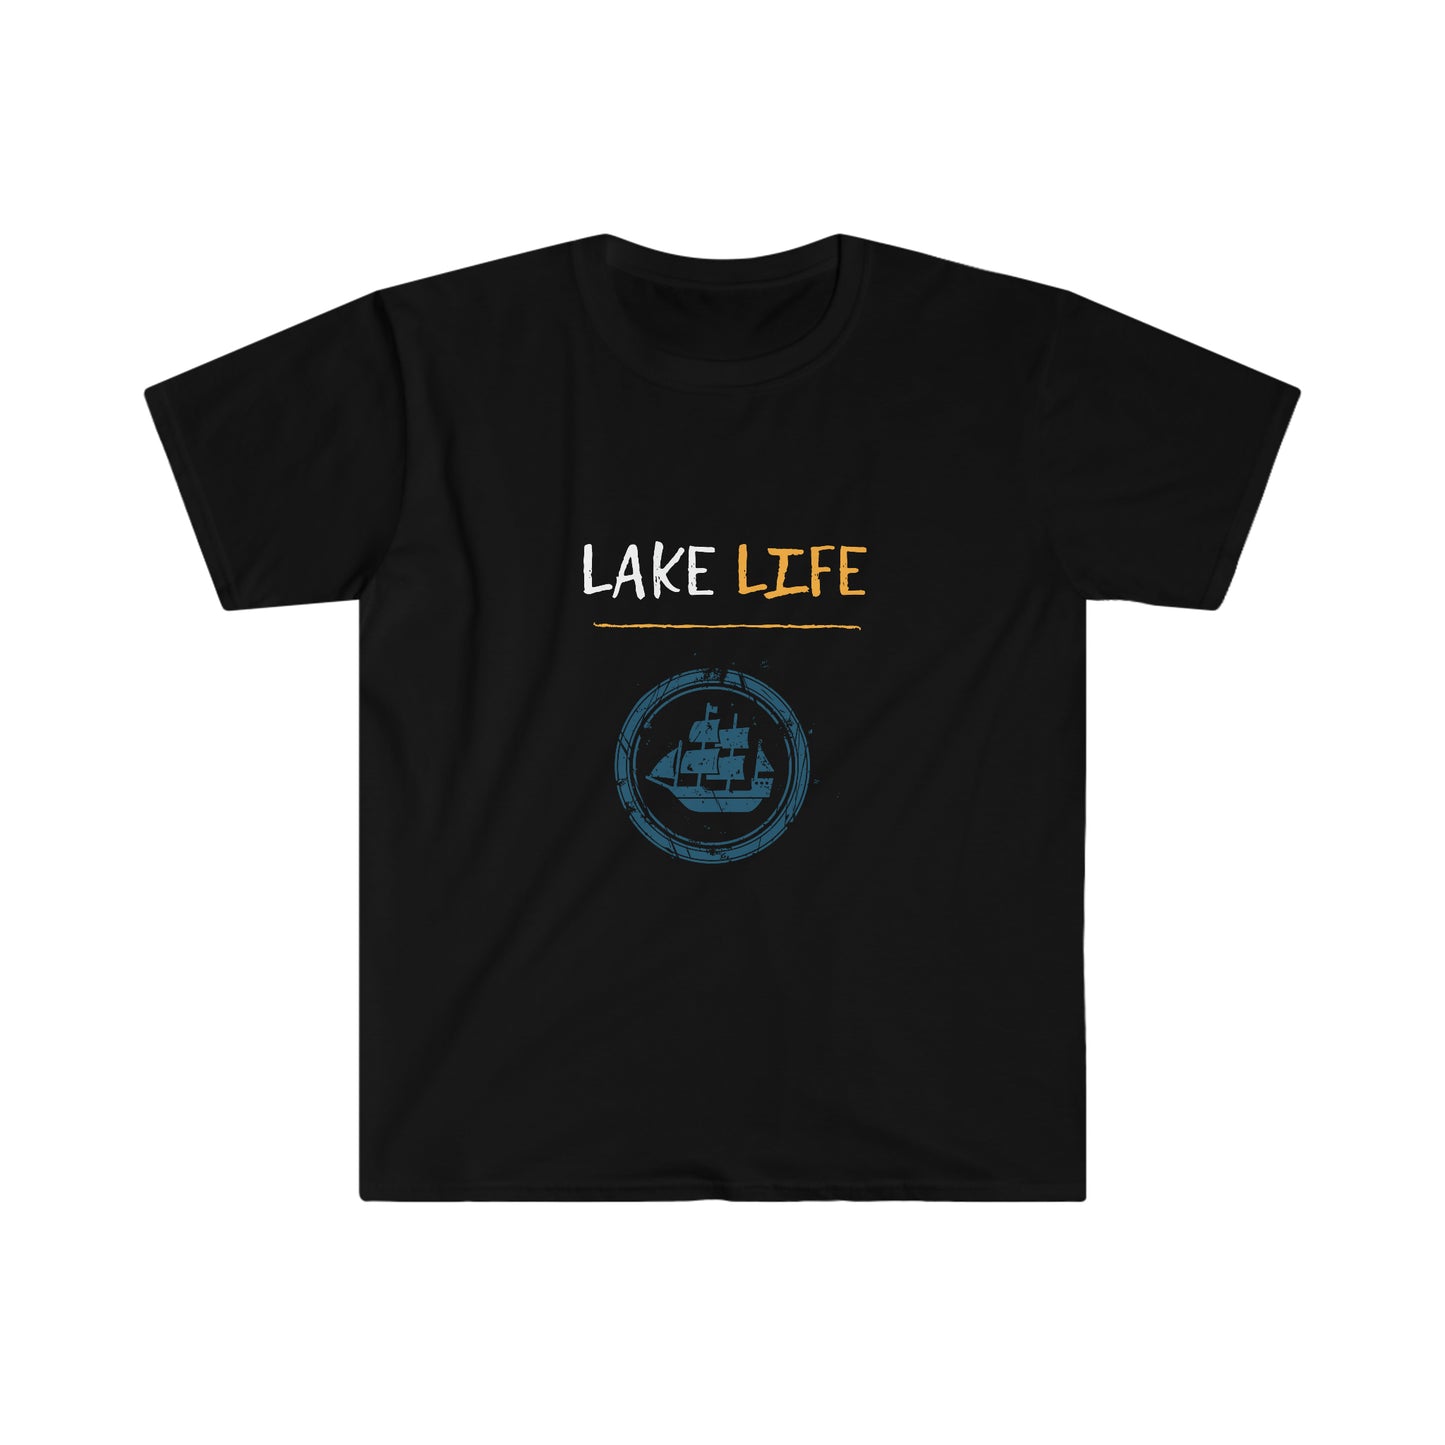 Lake Life - Sail Boat - Urban Camper